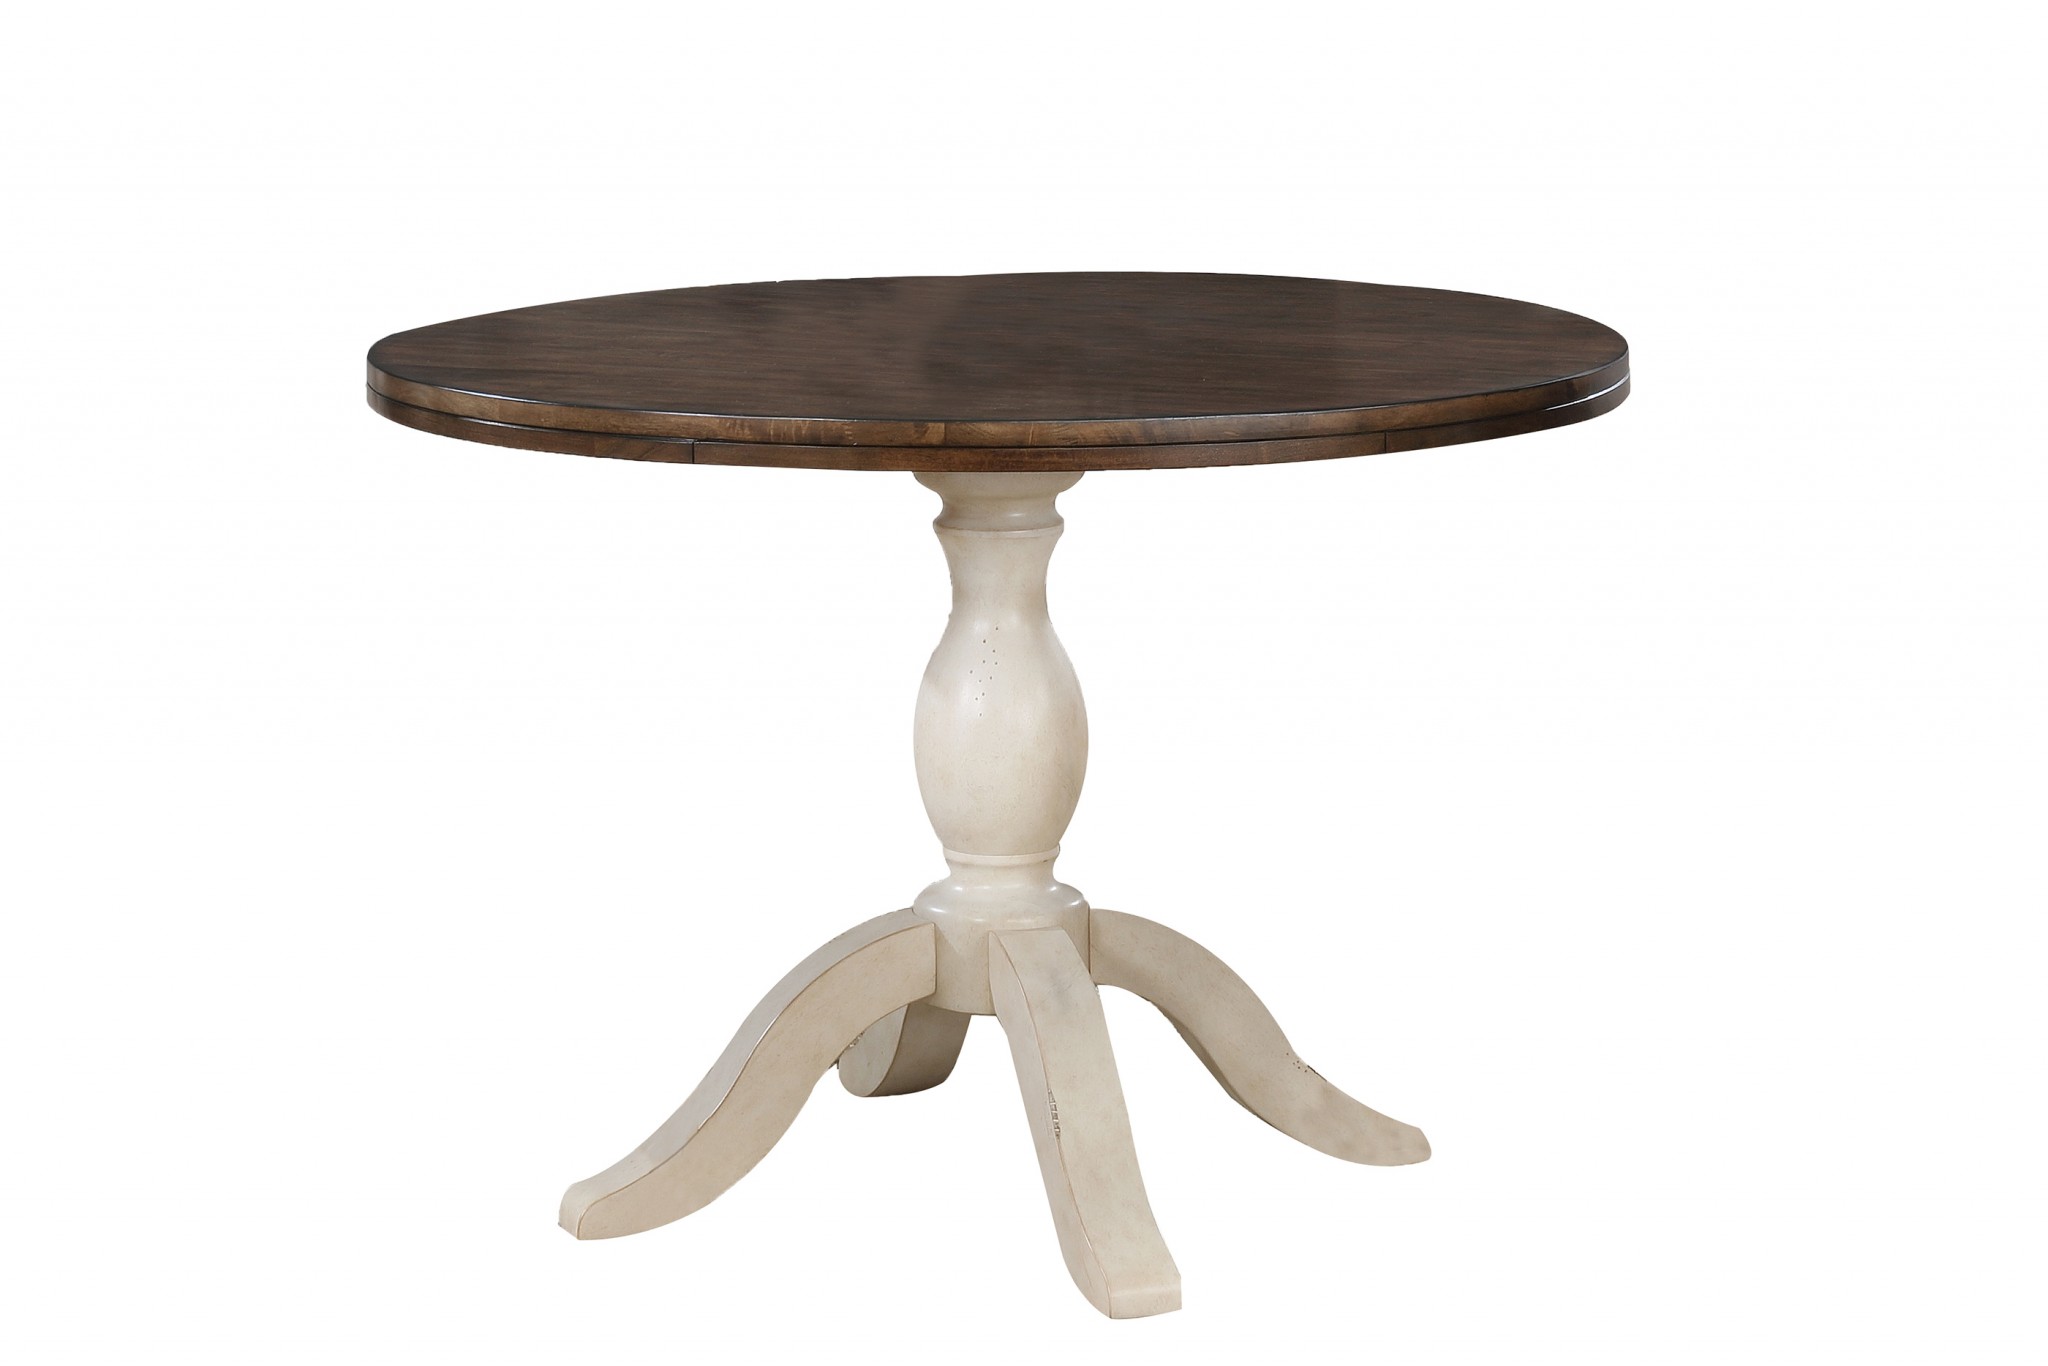 42" X 42" X 30" Walnut Antique White Finish Rubberwood Hardwood Round Pedestal Table